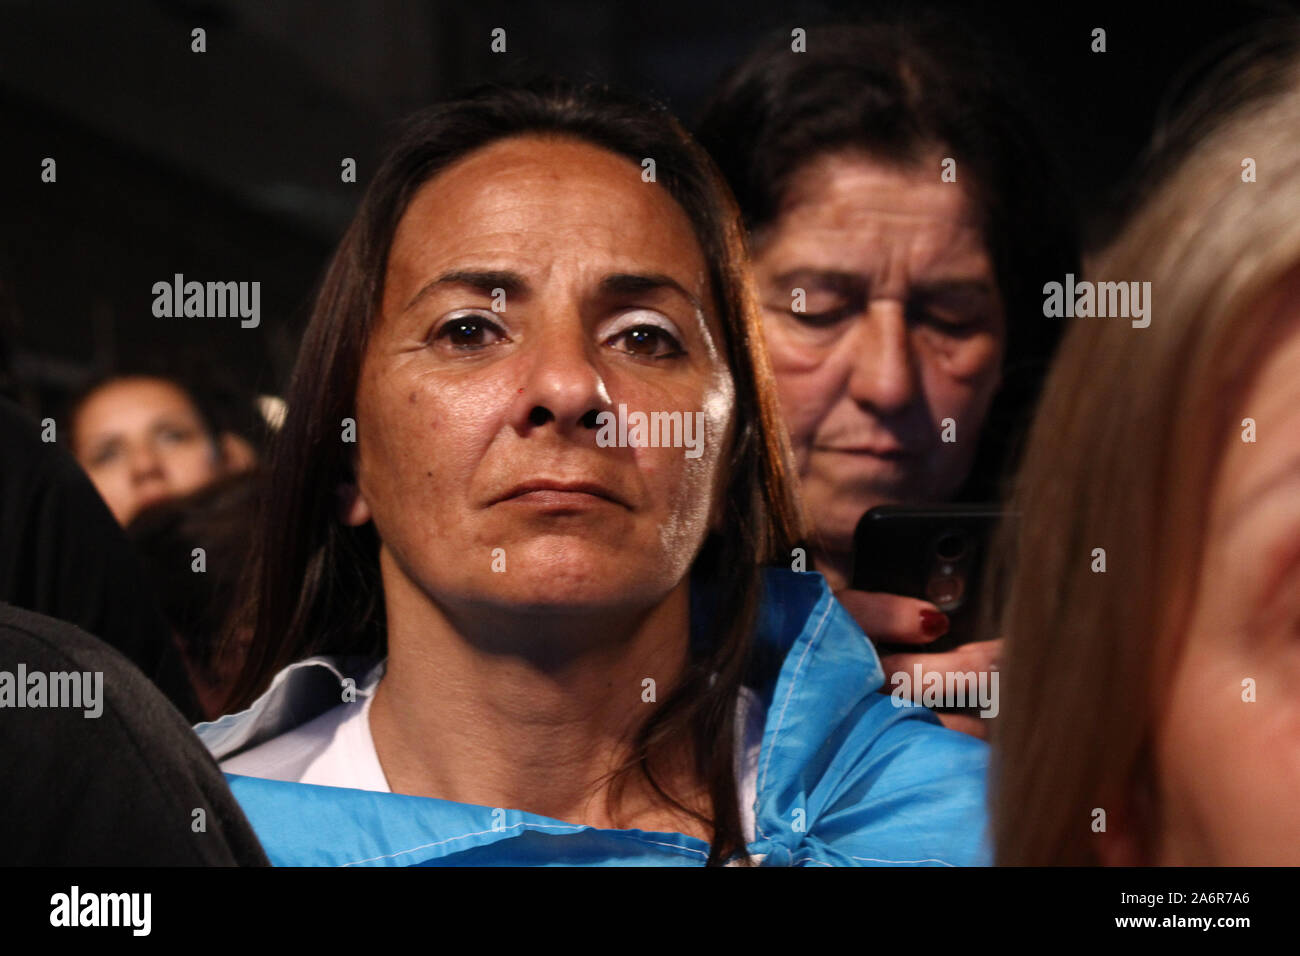 BUENOS AIRES, 27.10.2019 : Thowsands de partisans des milliers de personnes célèbrent la victoire d'Alberto Fernandez et Cristina Kirchner à la presiden Banque D'Images